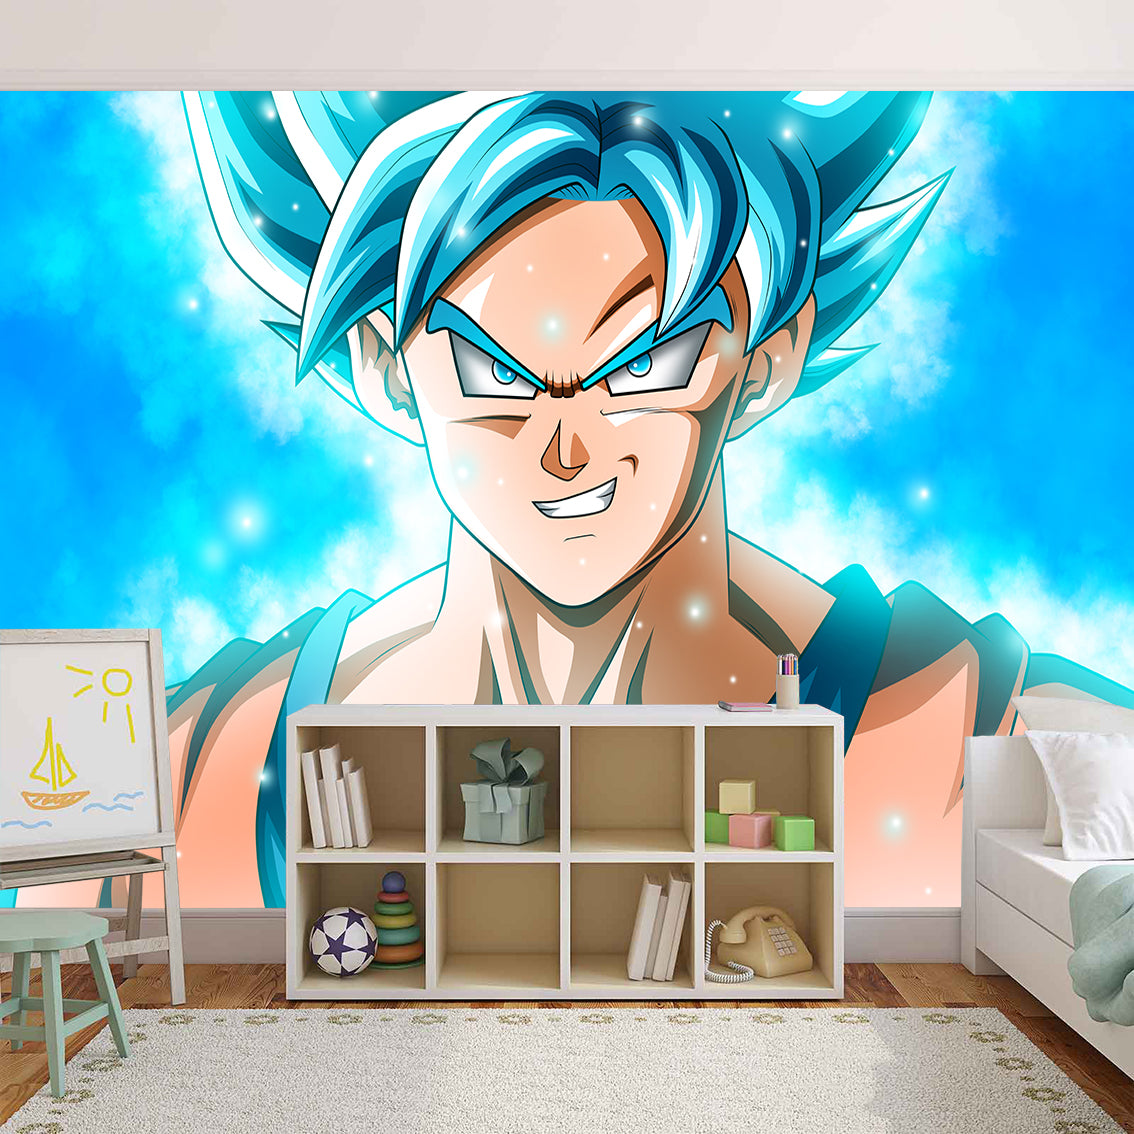 Dragon Ball Z Goku Woven Self-Adhesive Removable Wallpaper Modern